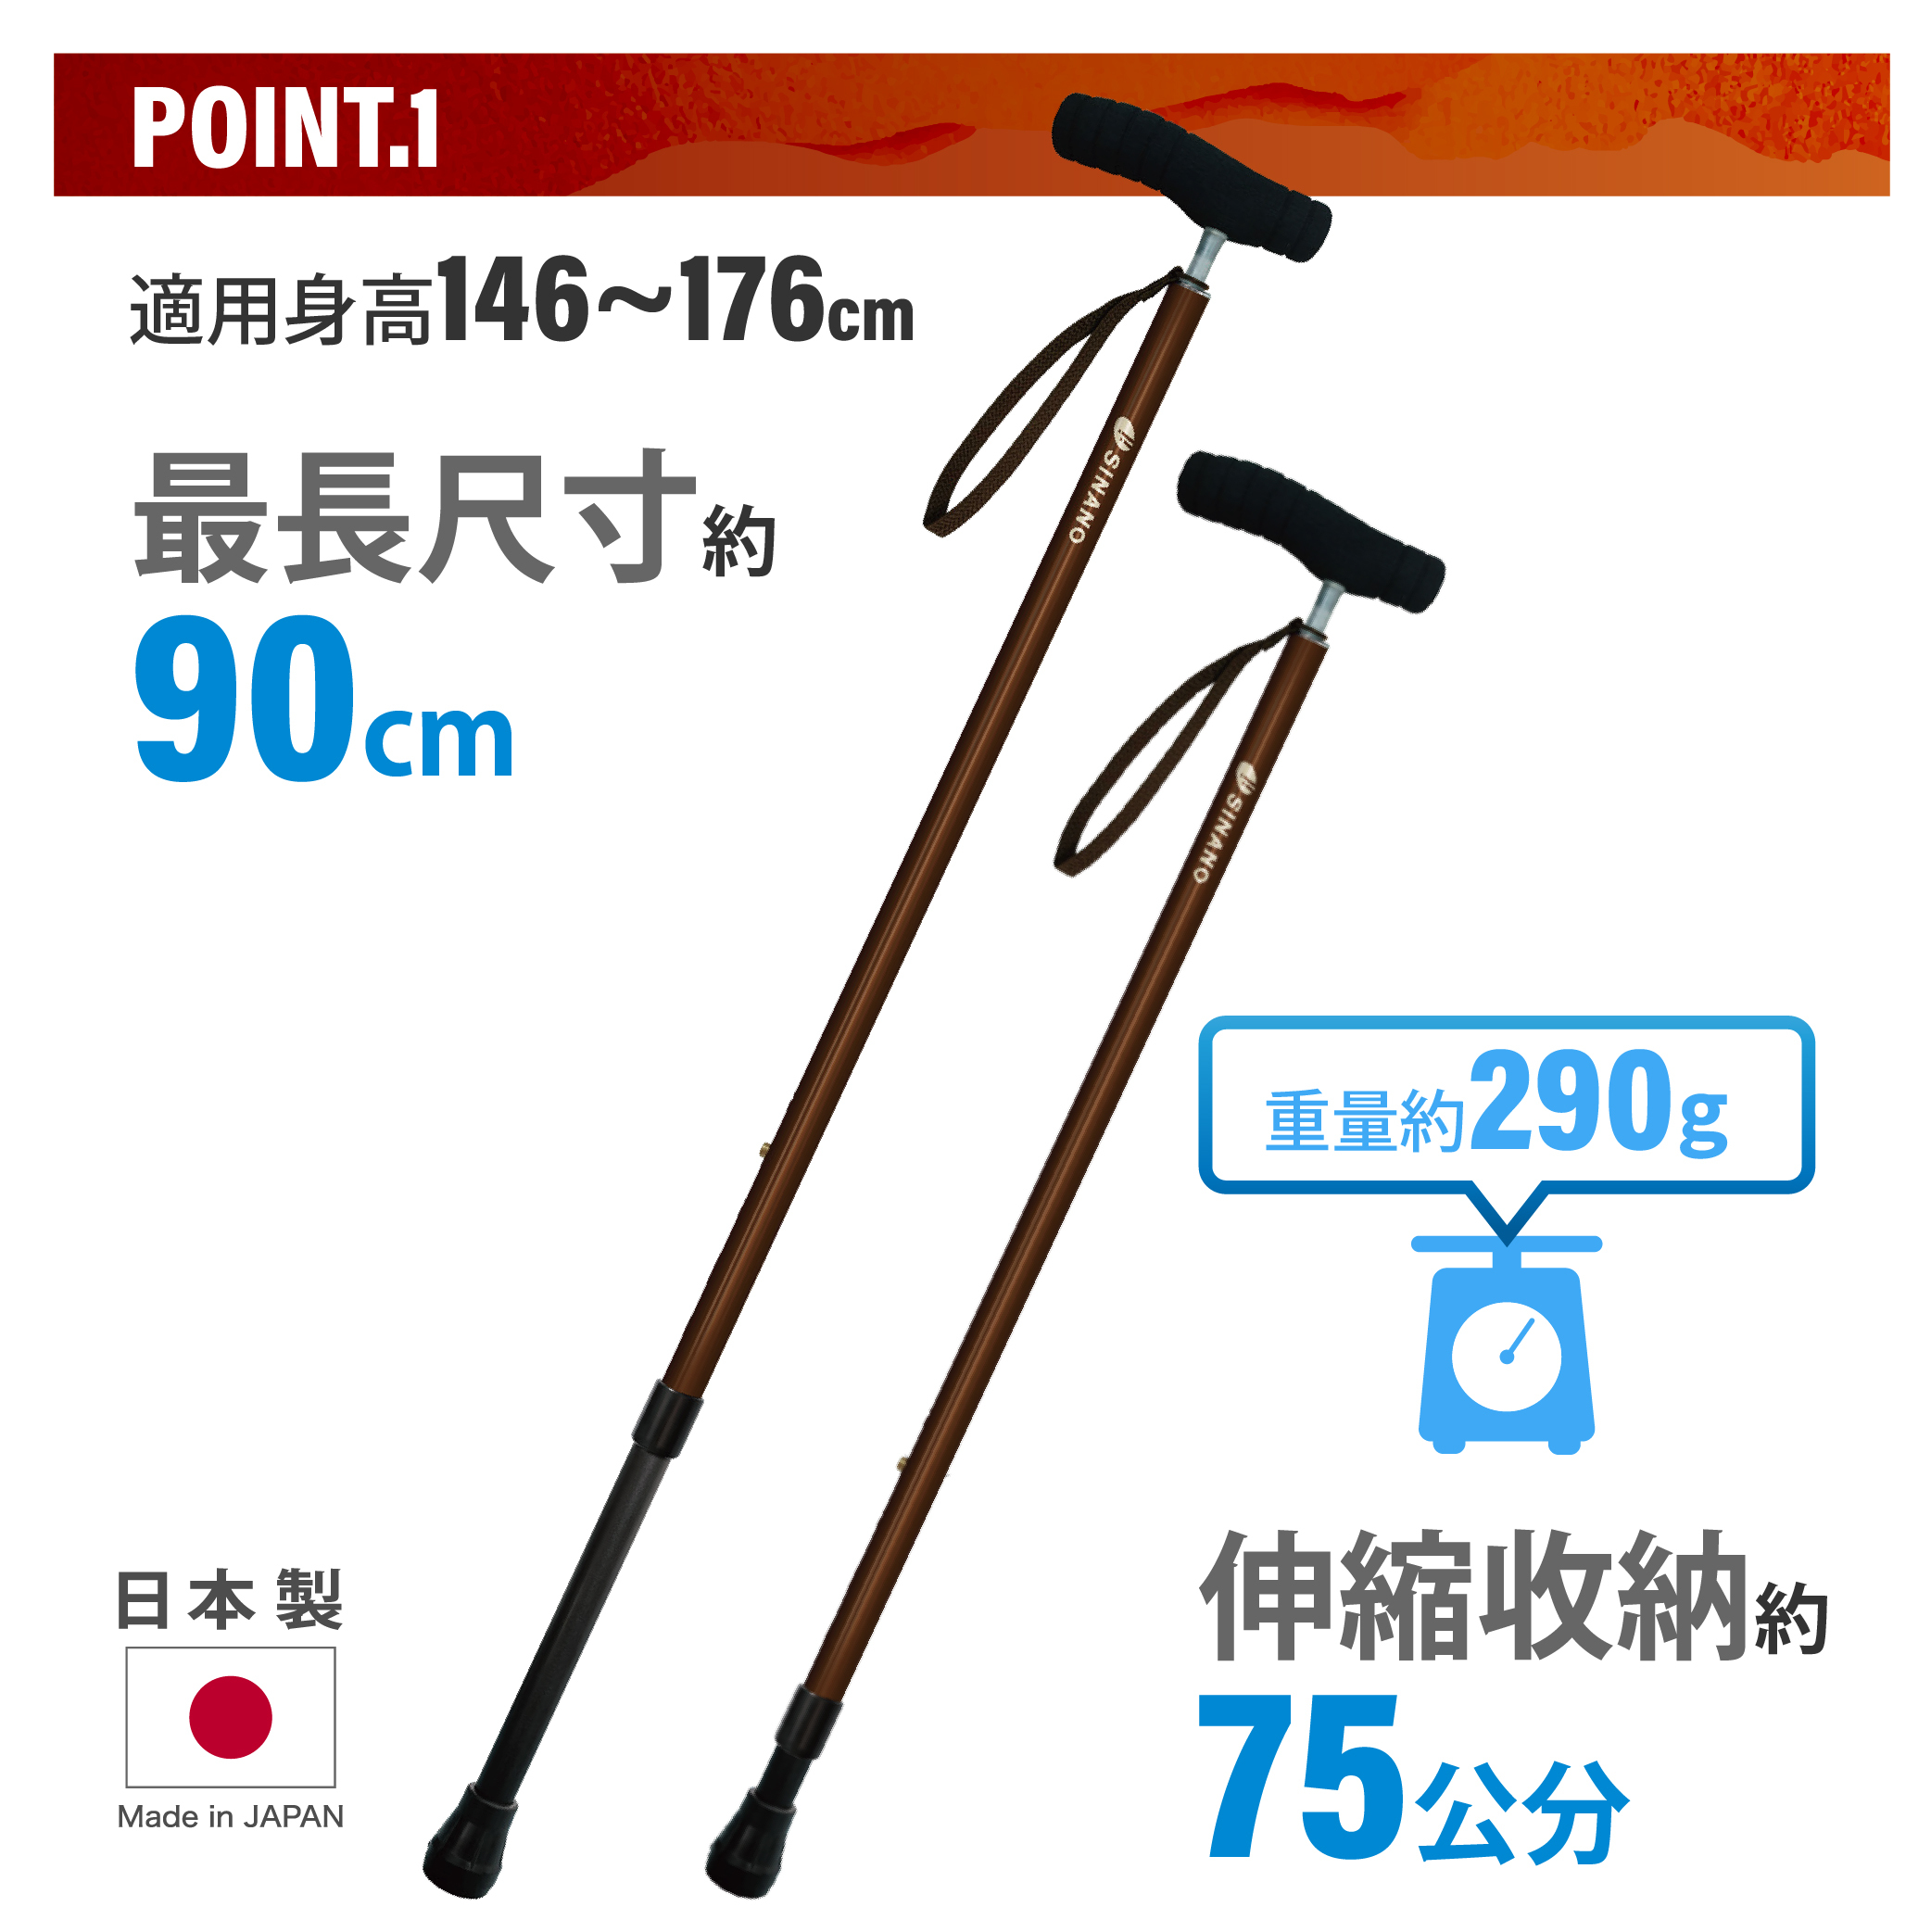 【耆妙屋】SINANO日本製SOFT-GA好握伸縮杖-日本製老人拐杖 走路輔助 戶外旅遊杖